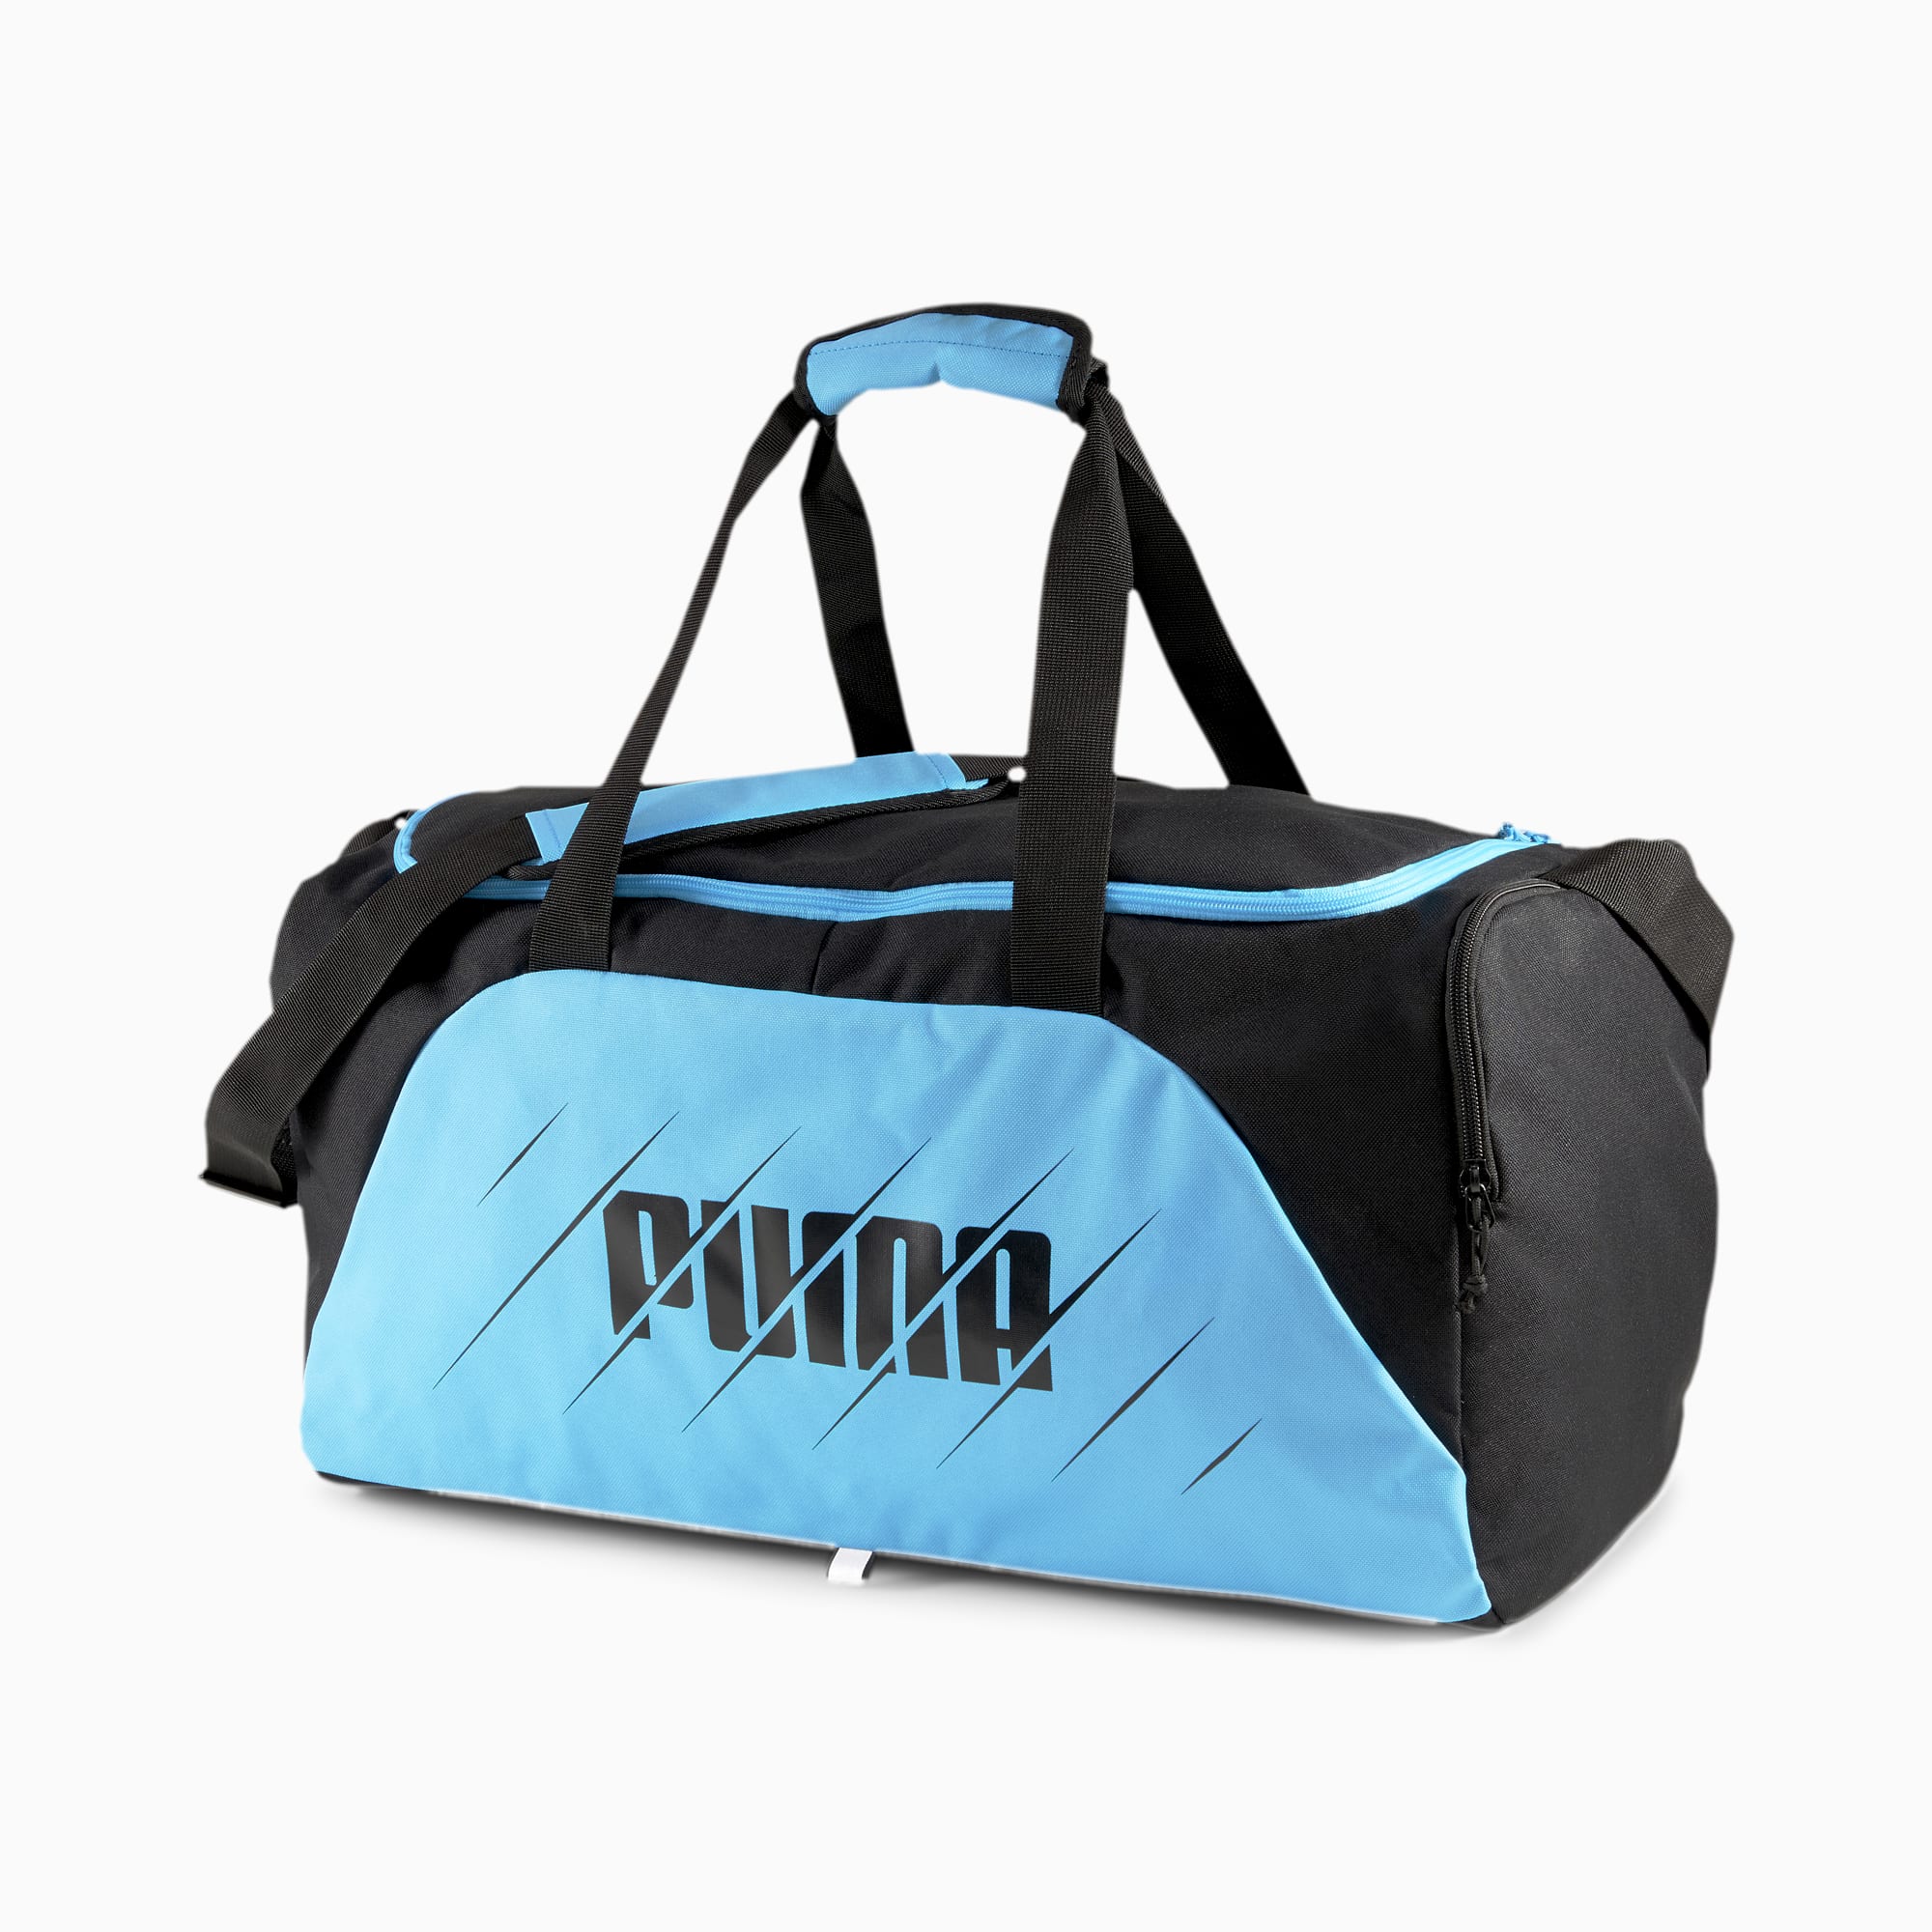 puma gym sports duffle bag